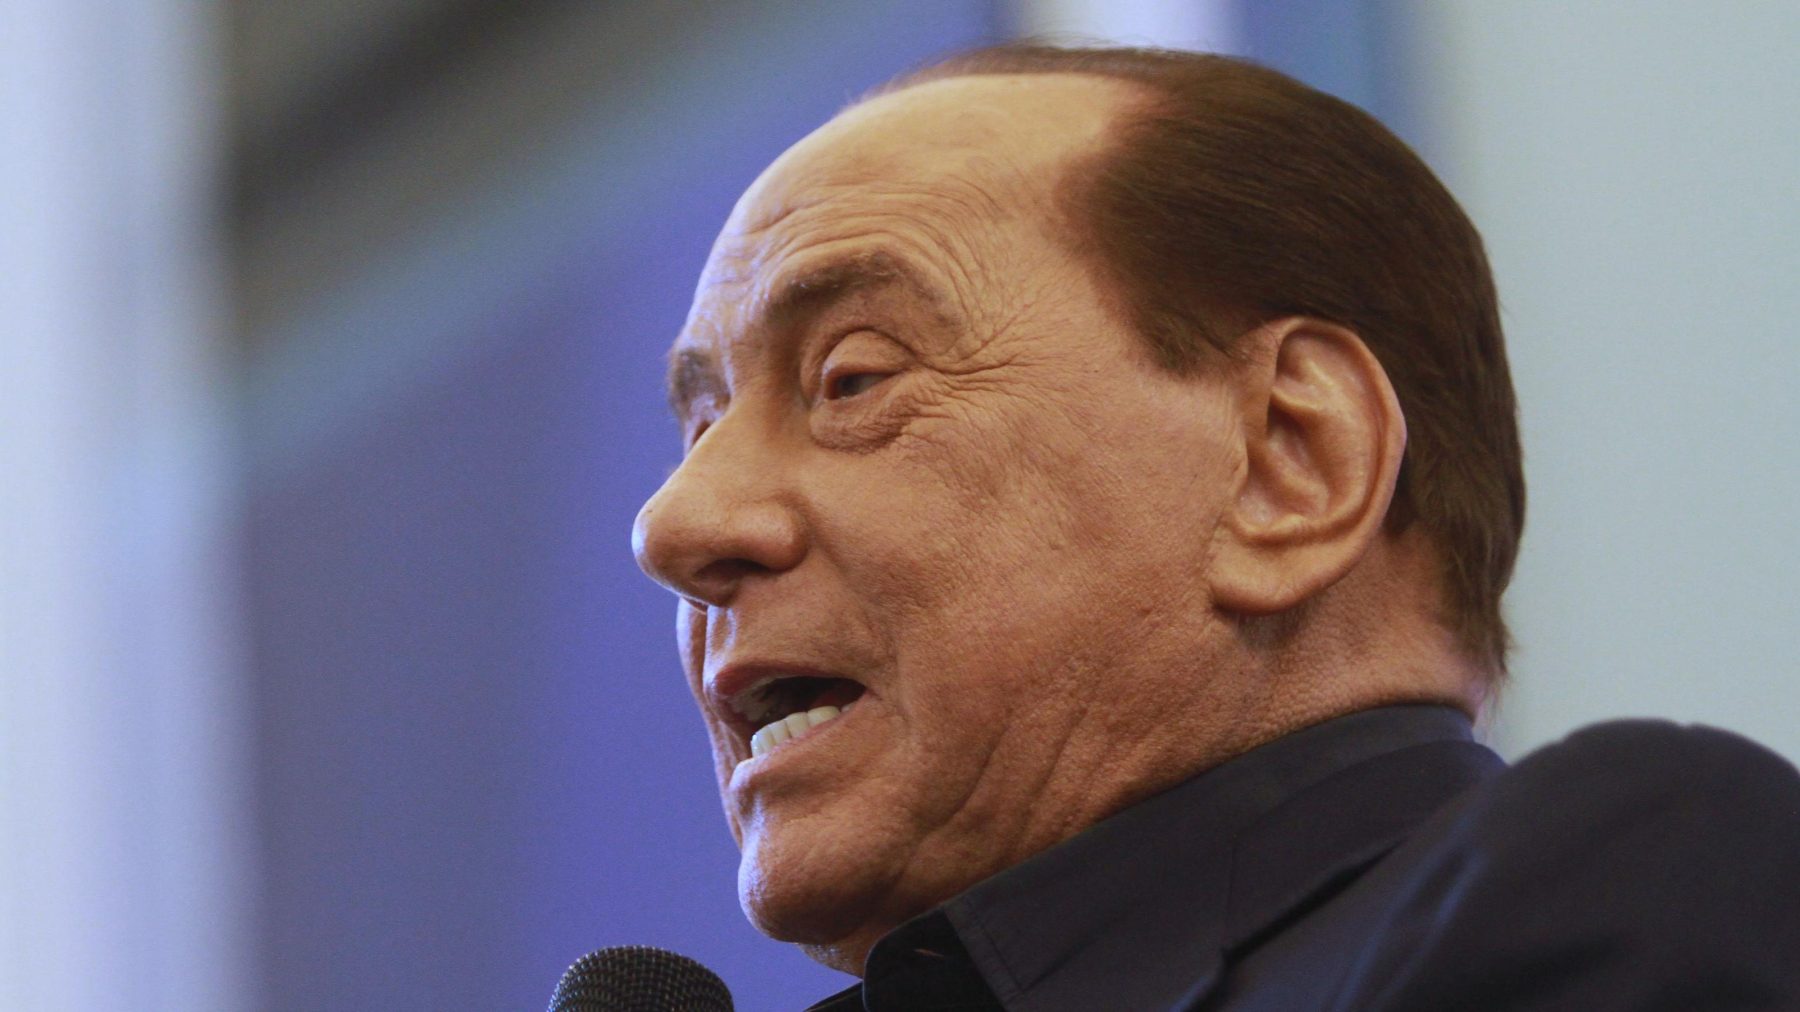 Berlusconi (85) doet gooi naar presidentschap ondanks omkopingsproces